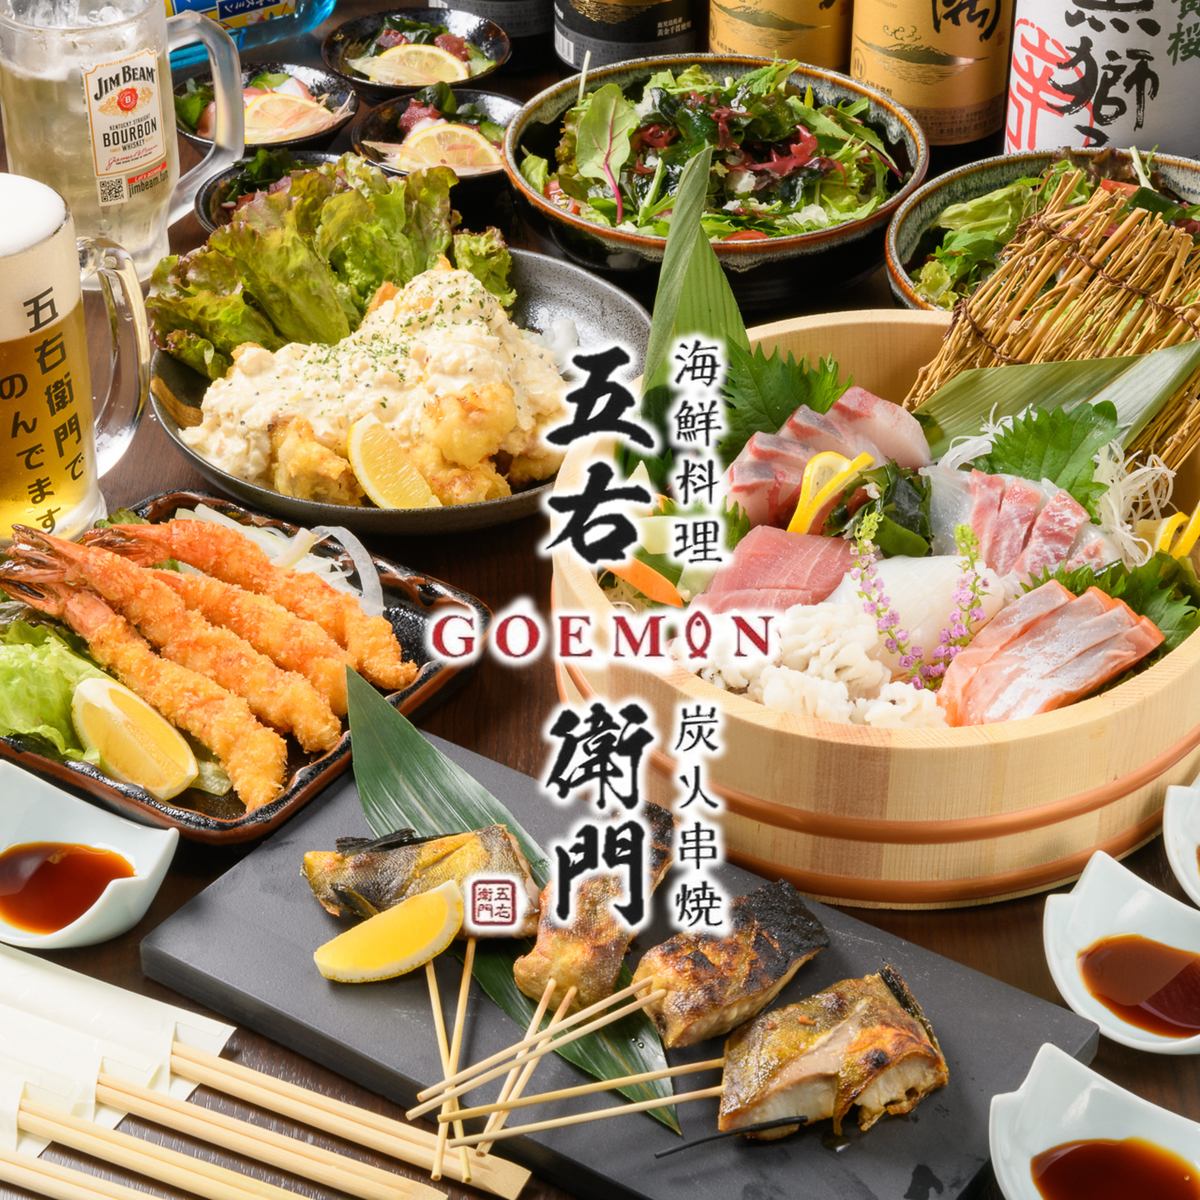 신선한 해산물과 숯불 꼬치구이를 일본식 식사의 차분한 공간에서 마음껏 즐겨 주세요.